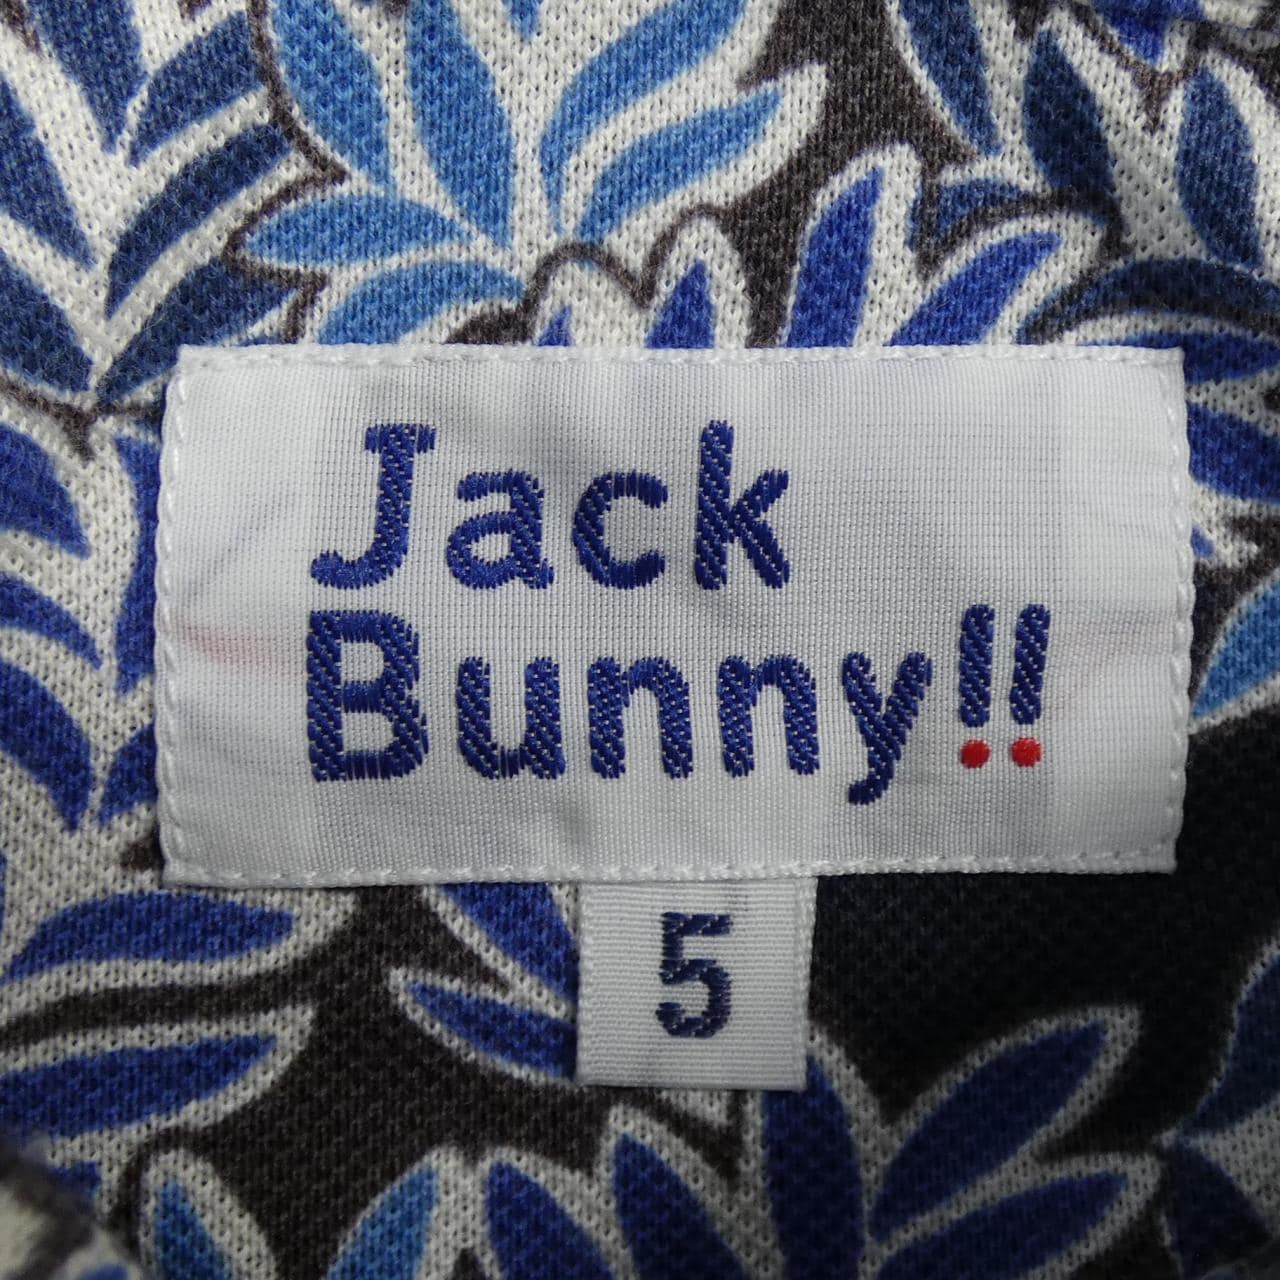 ジャックバニー Jack Bunny!! ポロシャツ